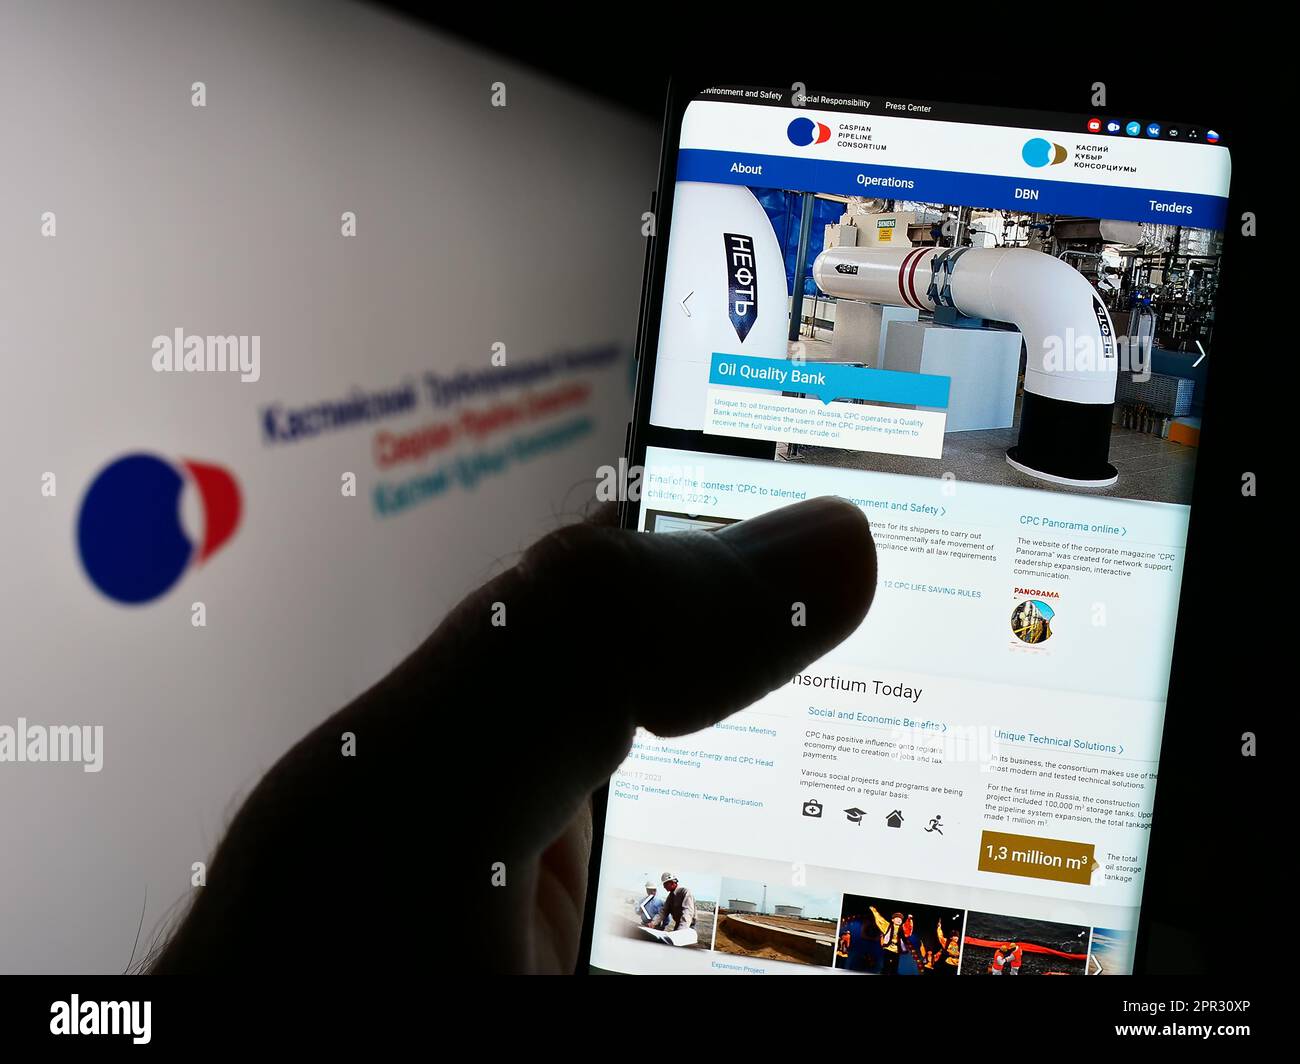 Personne tenant un téléphone portable avec la page Web du Consortium de pipeline Caspian (CPC) à l'écran devant le logo. Concentrez-vous sur le centre de l'écran du téléphone. Banque D'Images